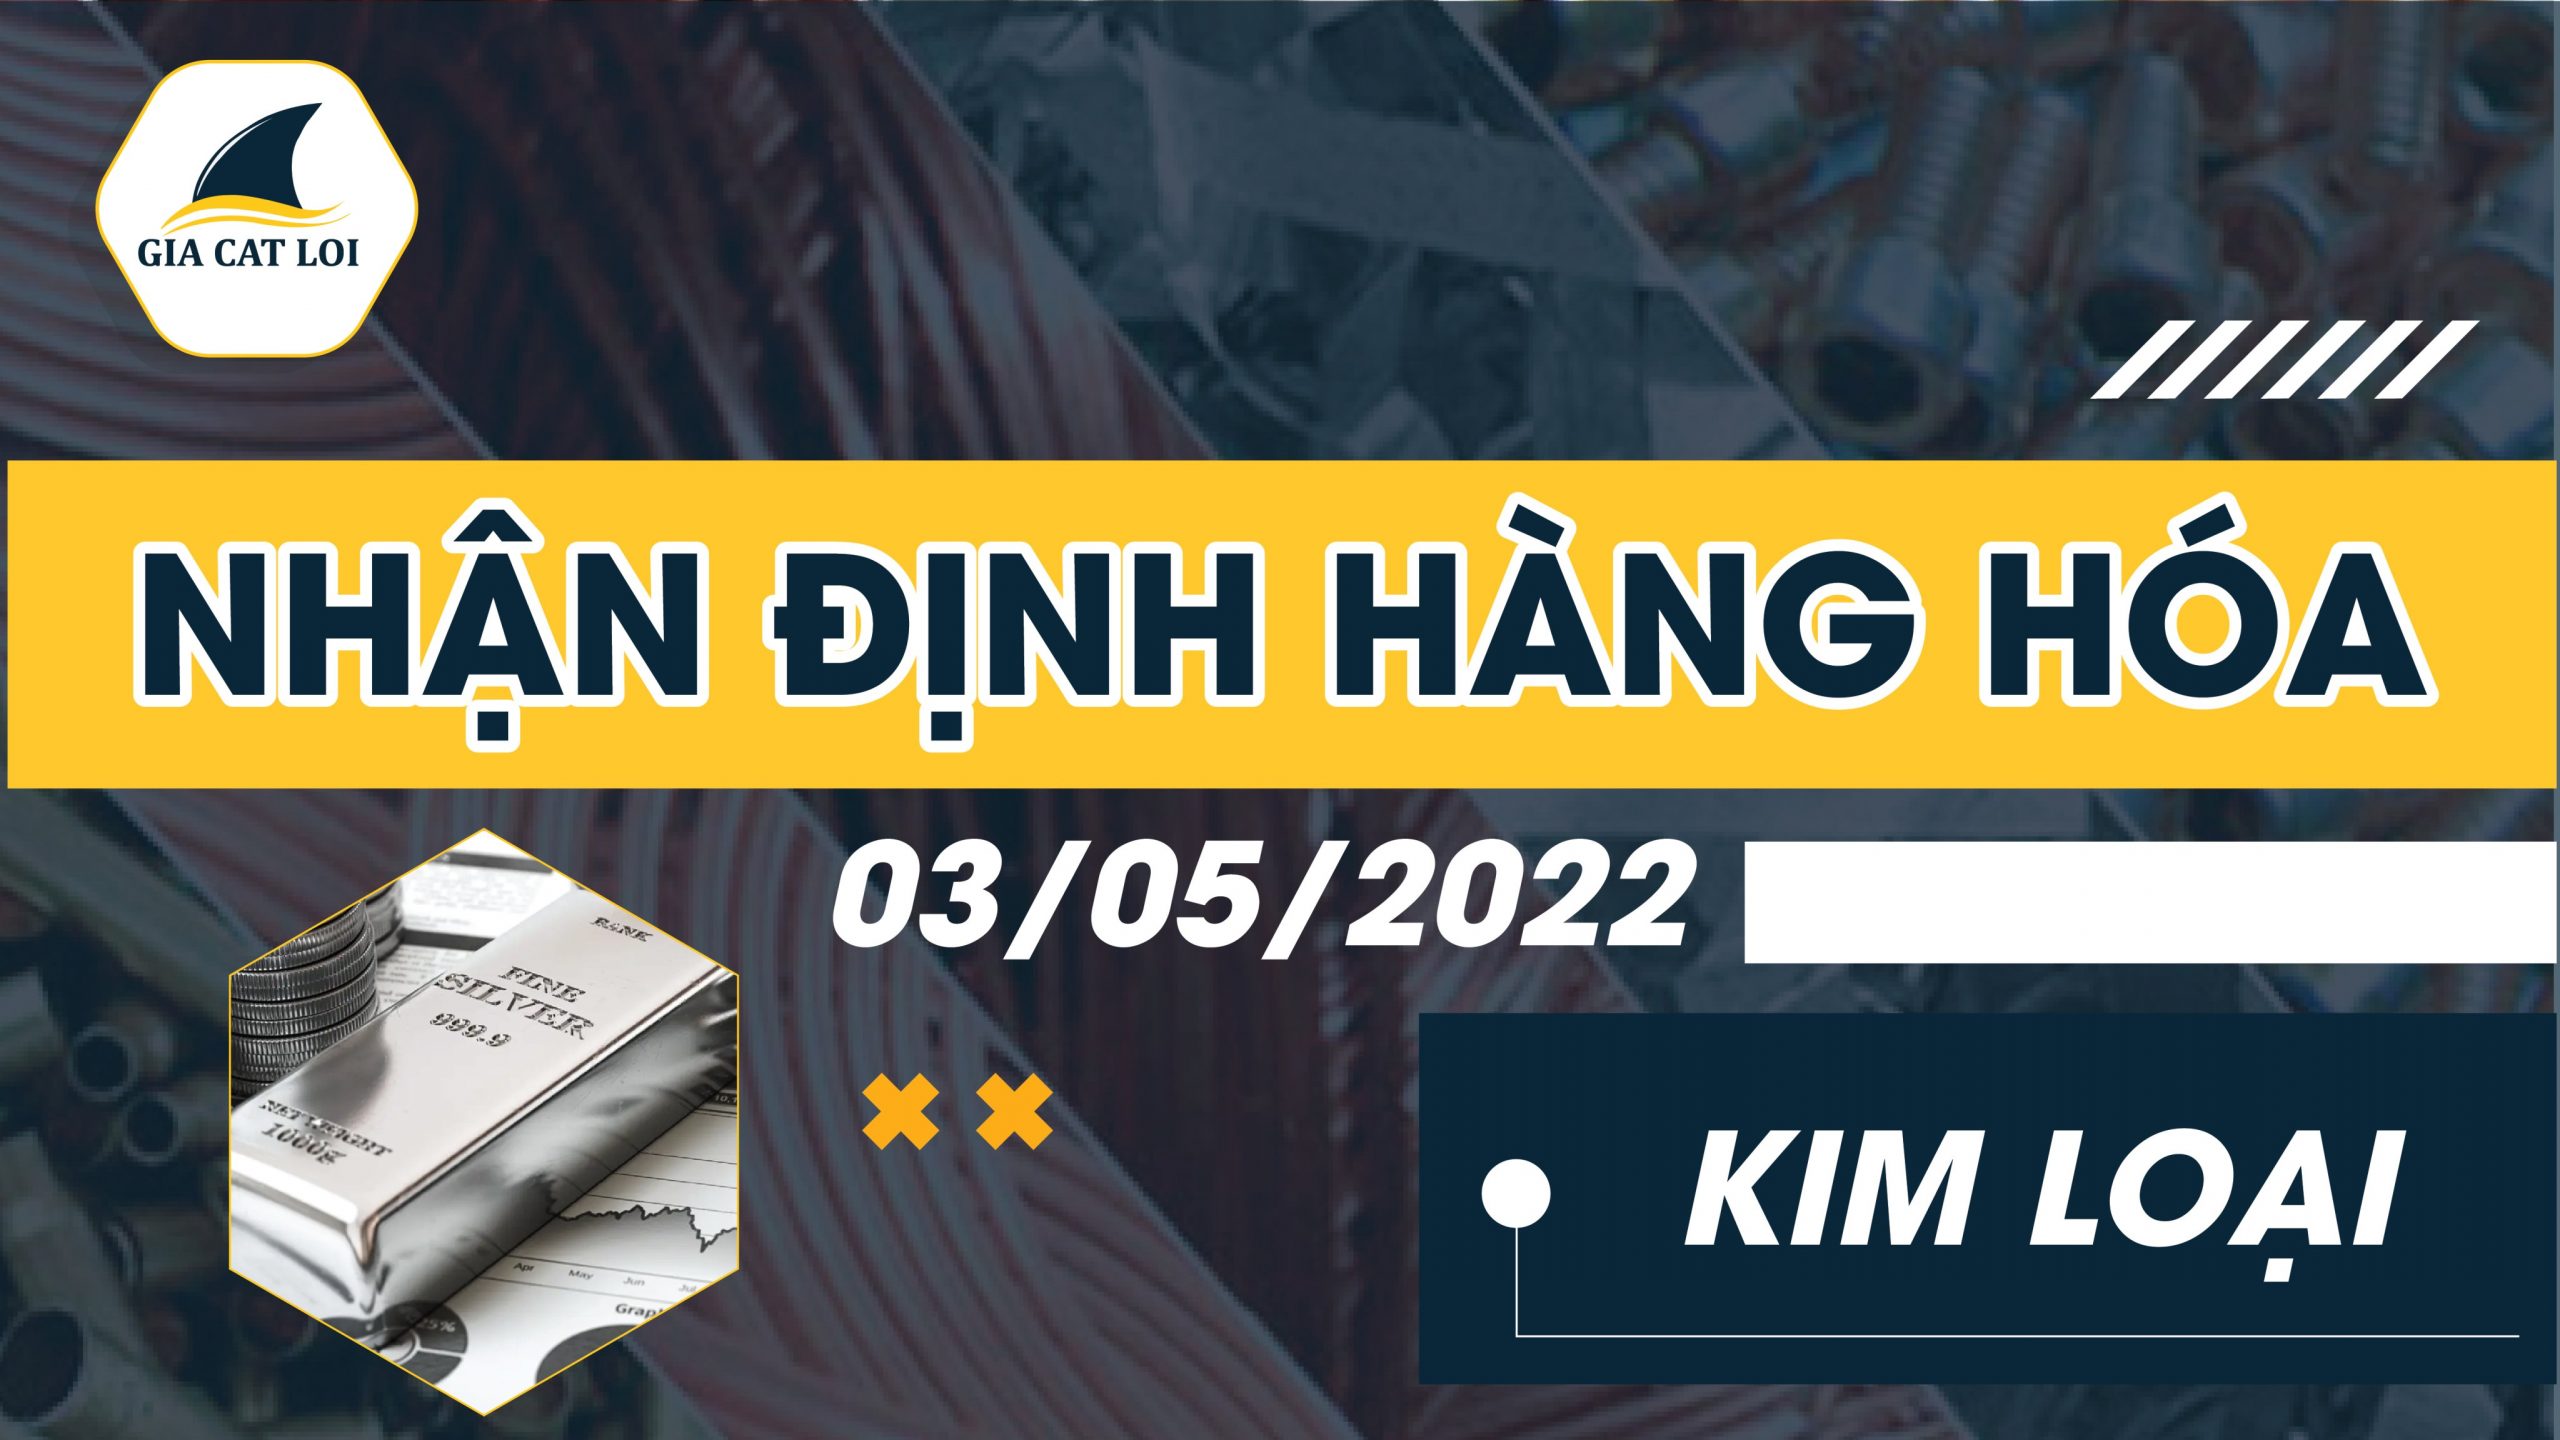 Nhận Định Thị Trường Kim Loại Ngày 03/05/2022